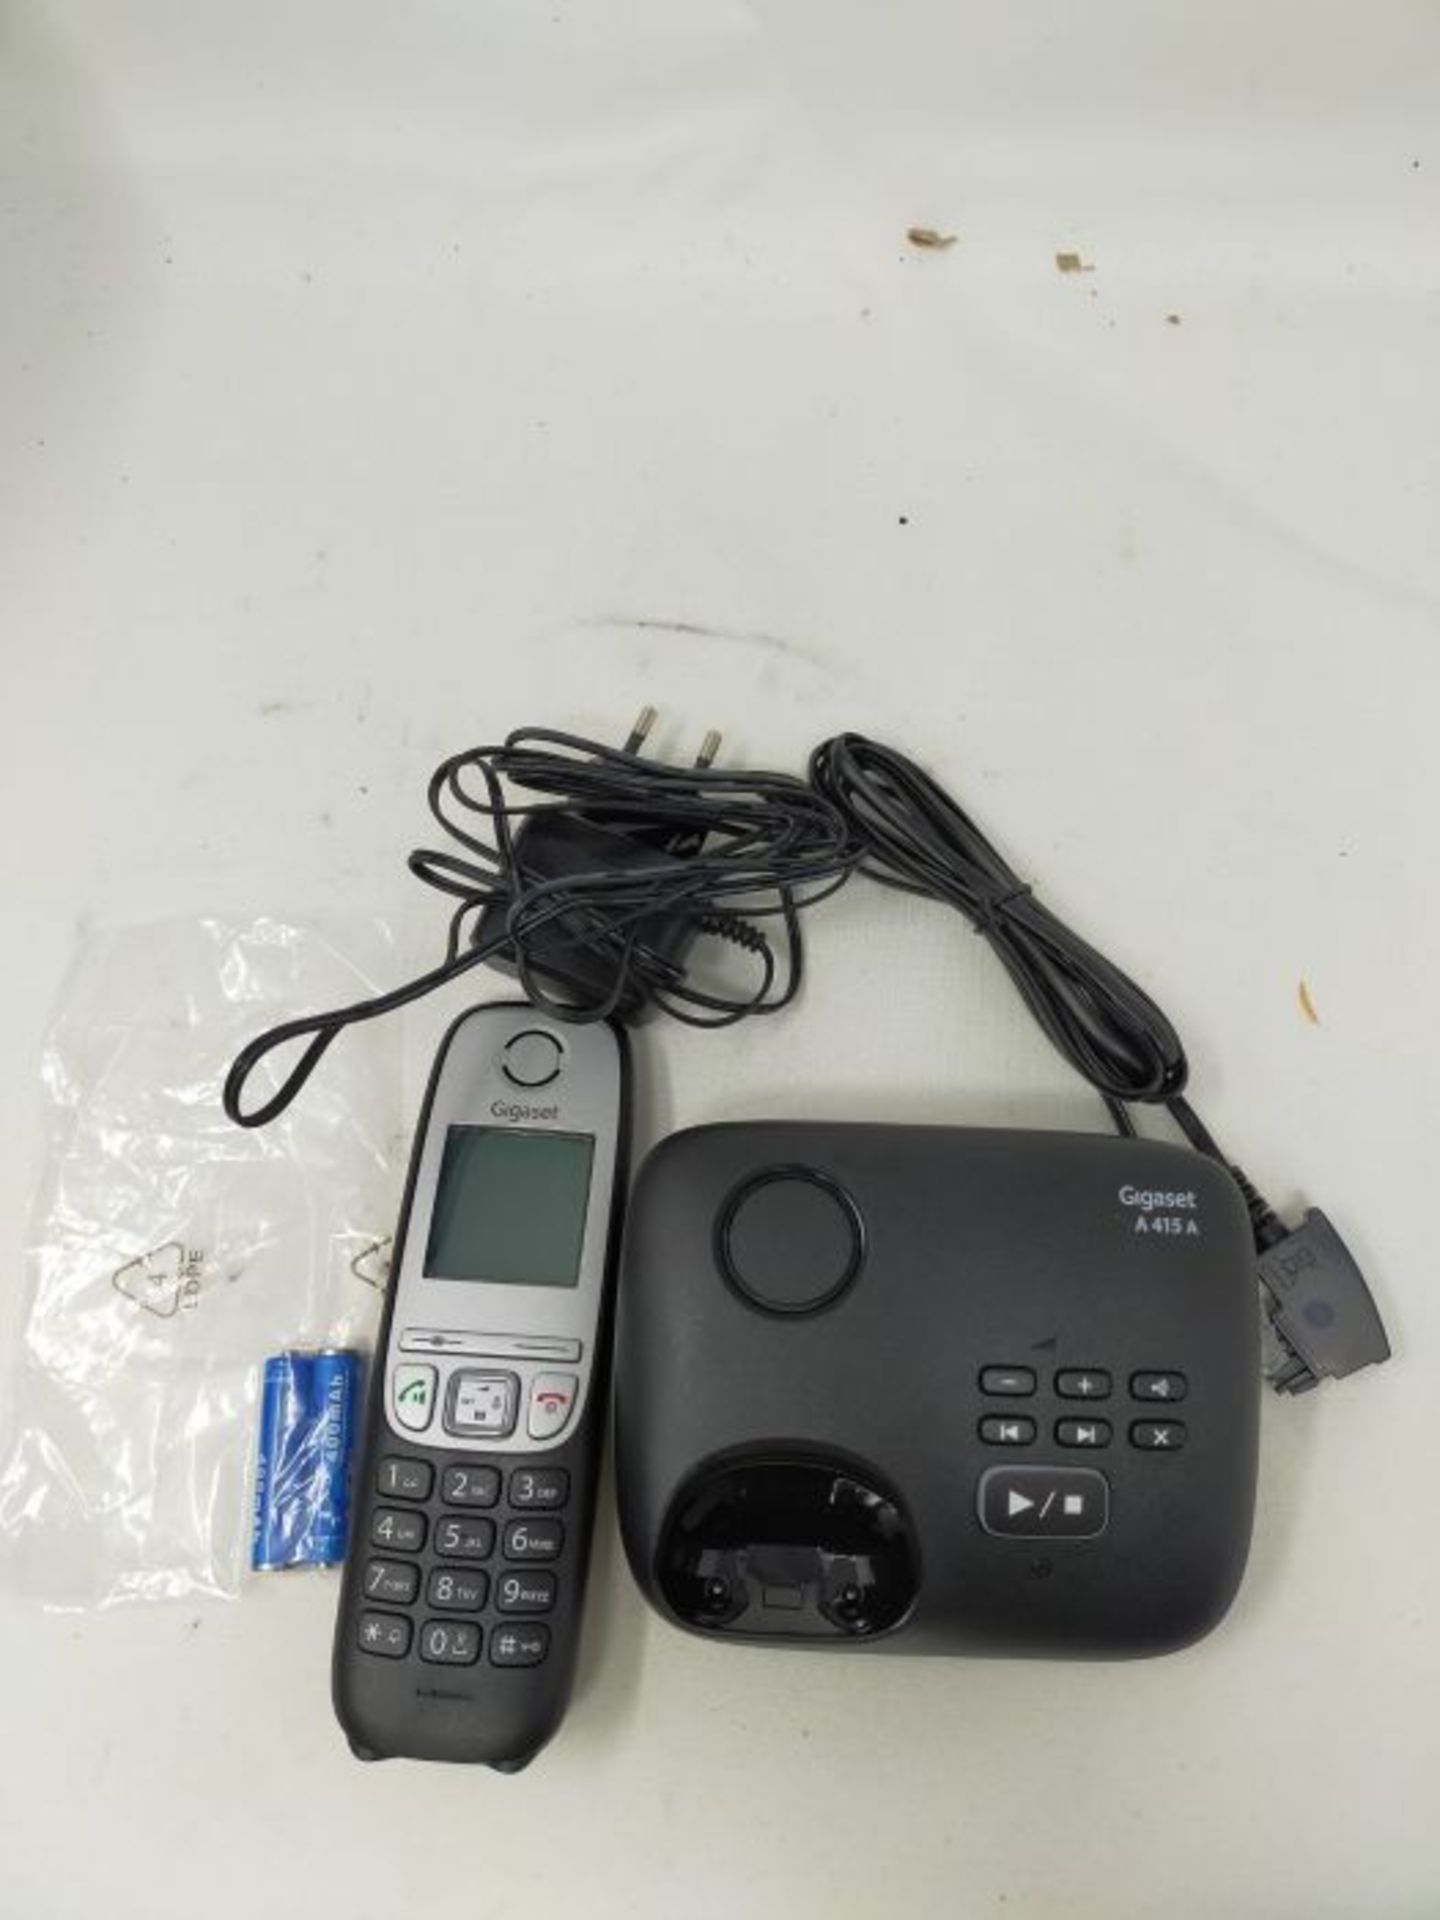 Gigaset A415A, Schnurloses Telefon DECT mit Anrufbeantworter, Freisprechfunktion, Kurz - Image 3 of 3